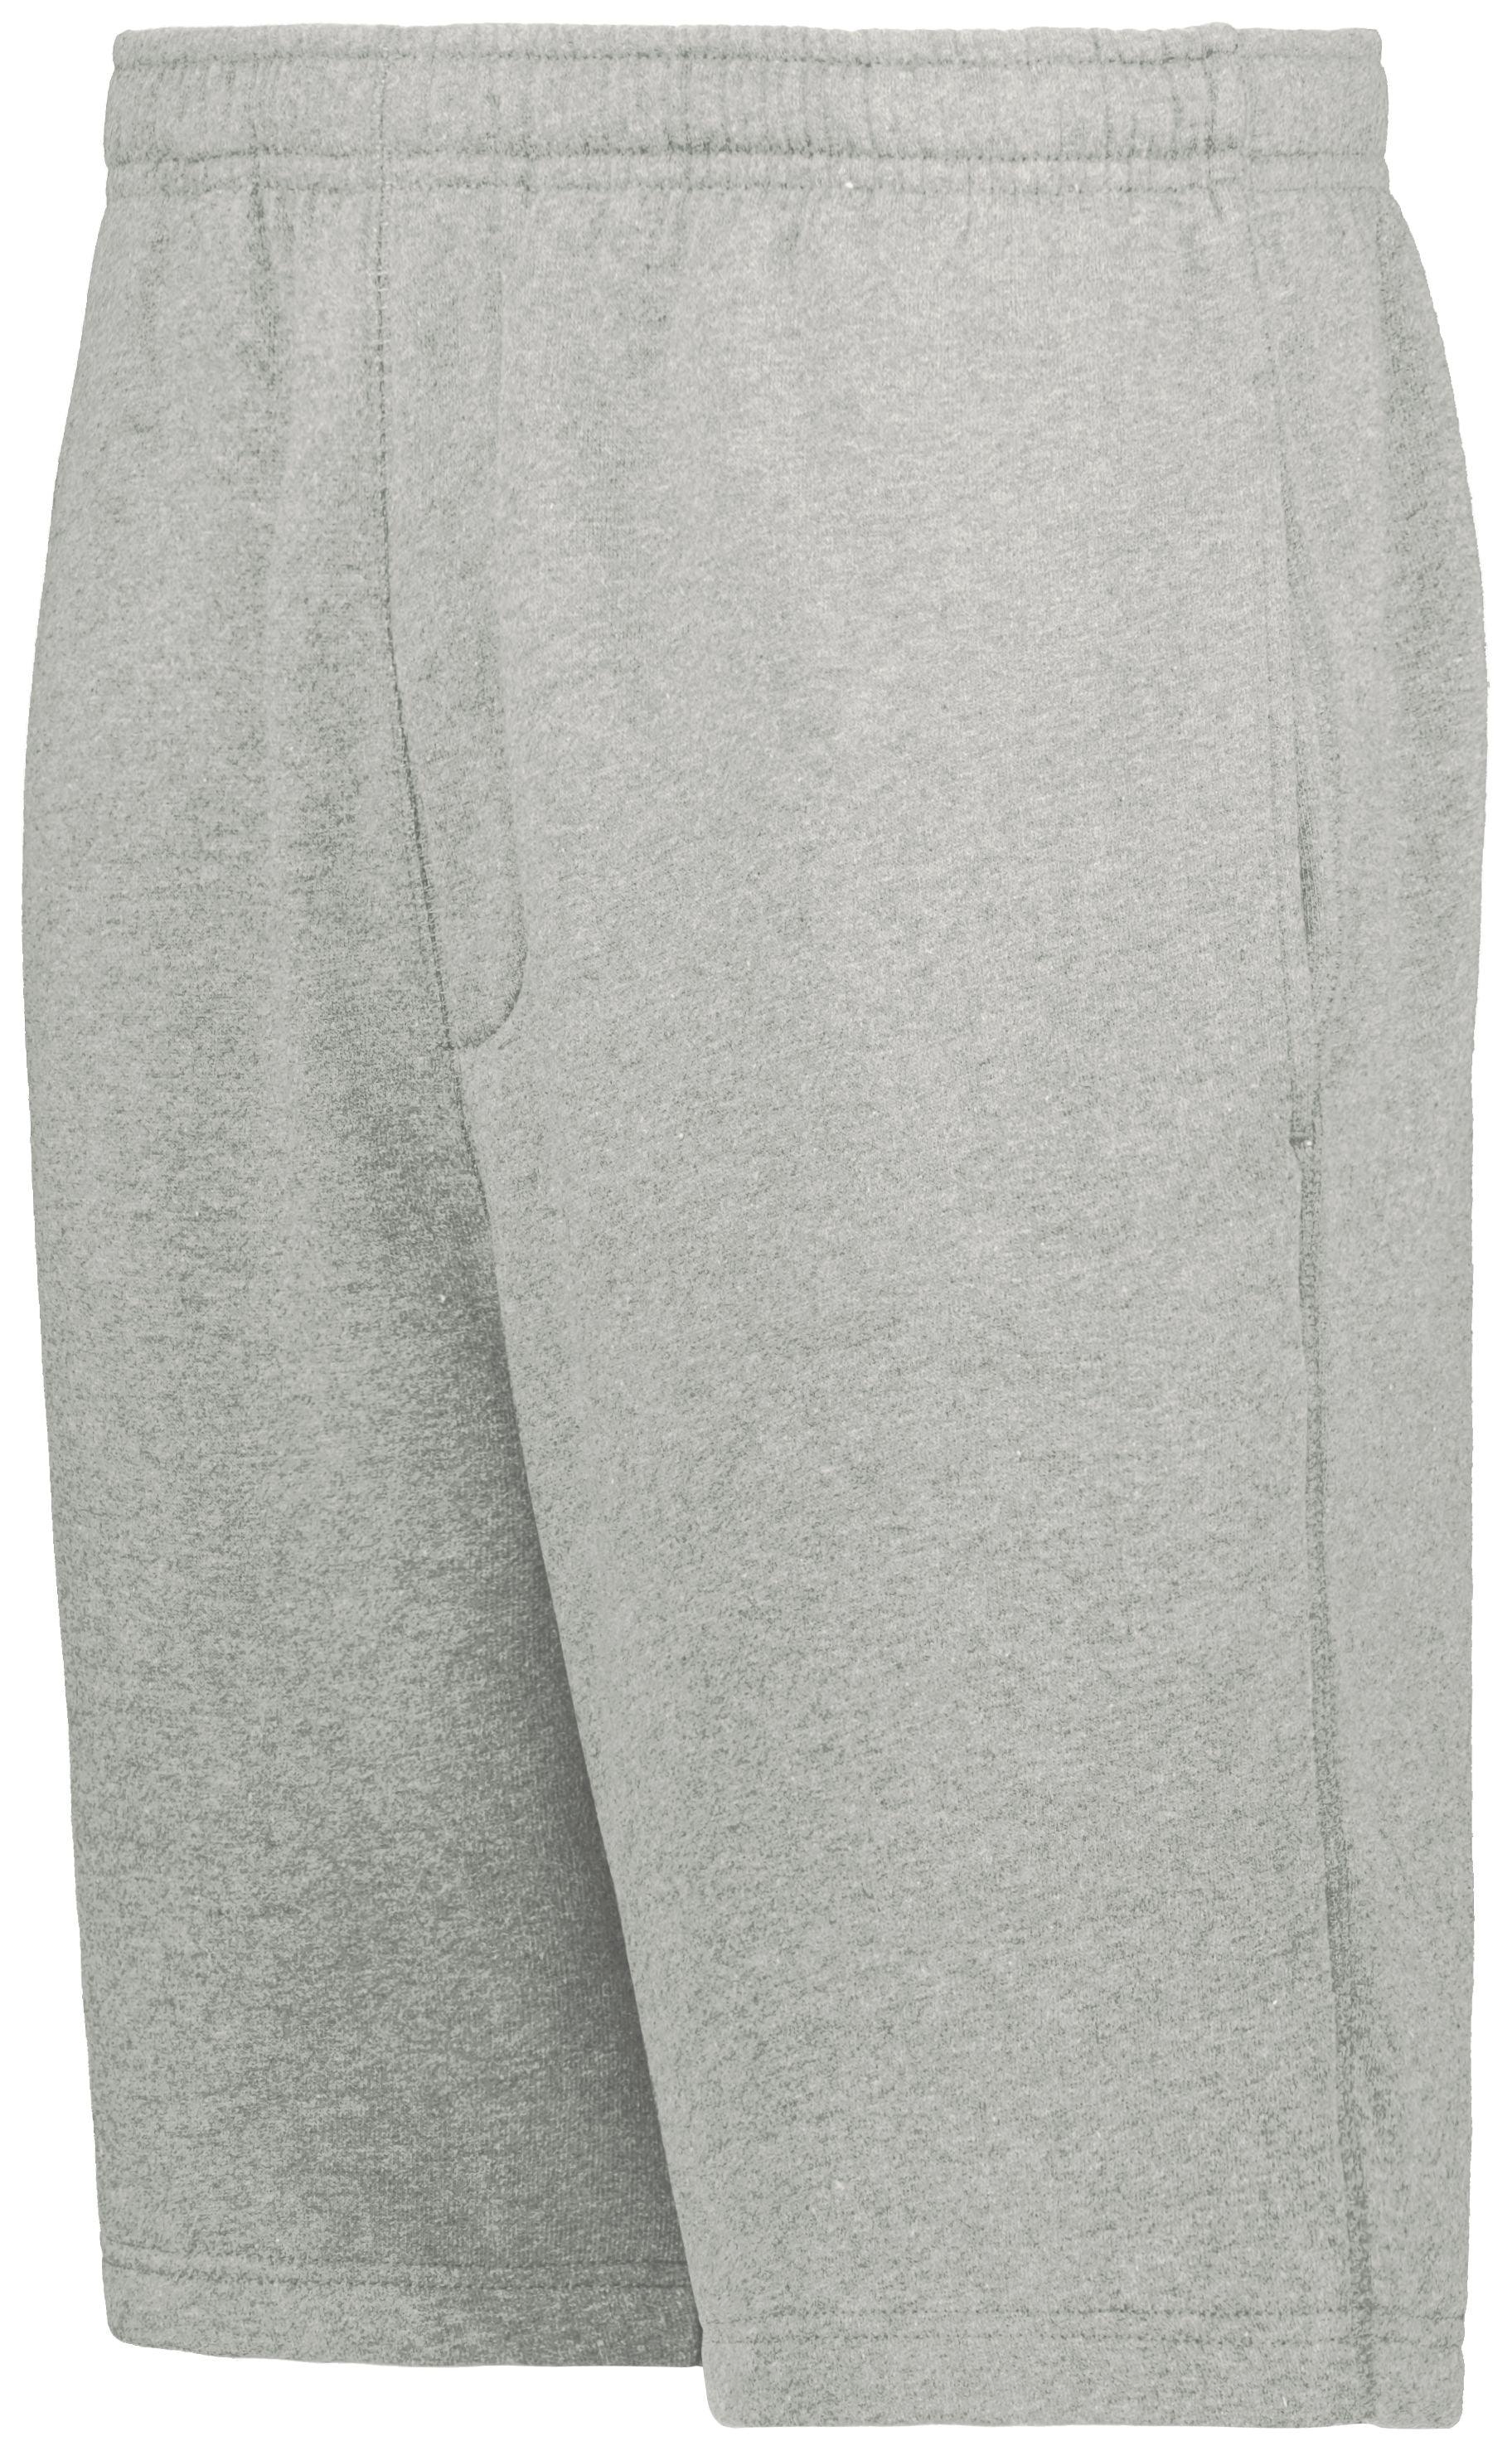 60/40 Fleece Shorts - Dresses Max